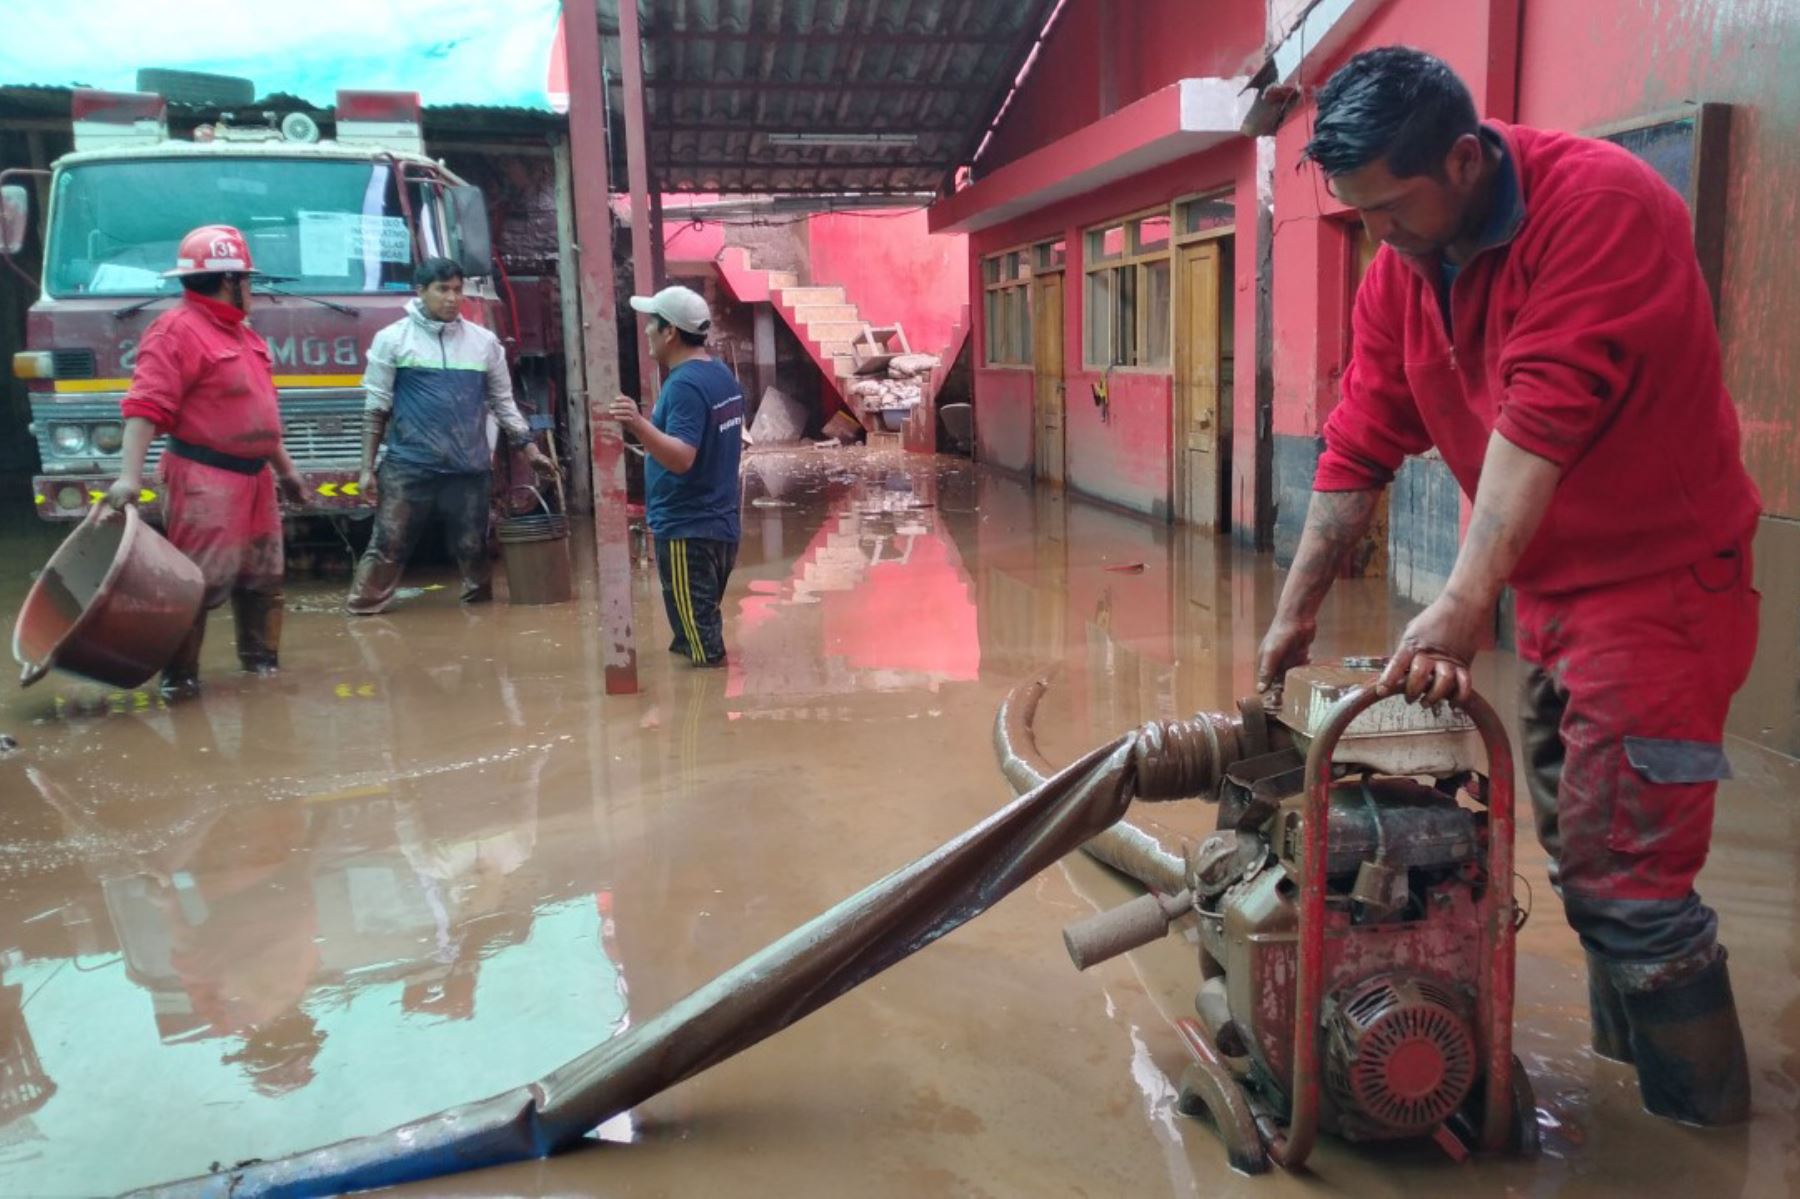 El local de la Compañía de Bomberos 131 de la ciudad de Pisac, provincia cusqueña de Calca, está a punto de colapsar, tras la inundación que sufrió en la víspera por el desborde del río Kitamayo, que sepultó al menos 20 viviendas en esta localidad.